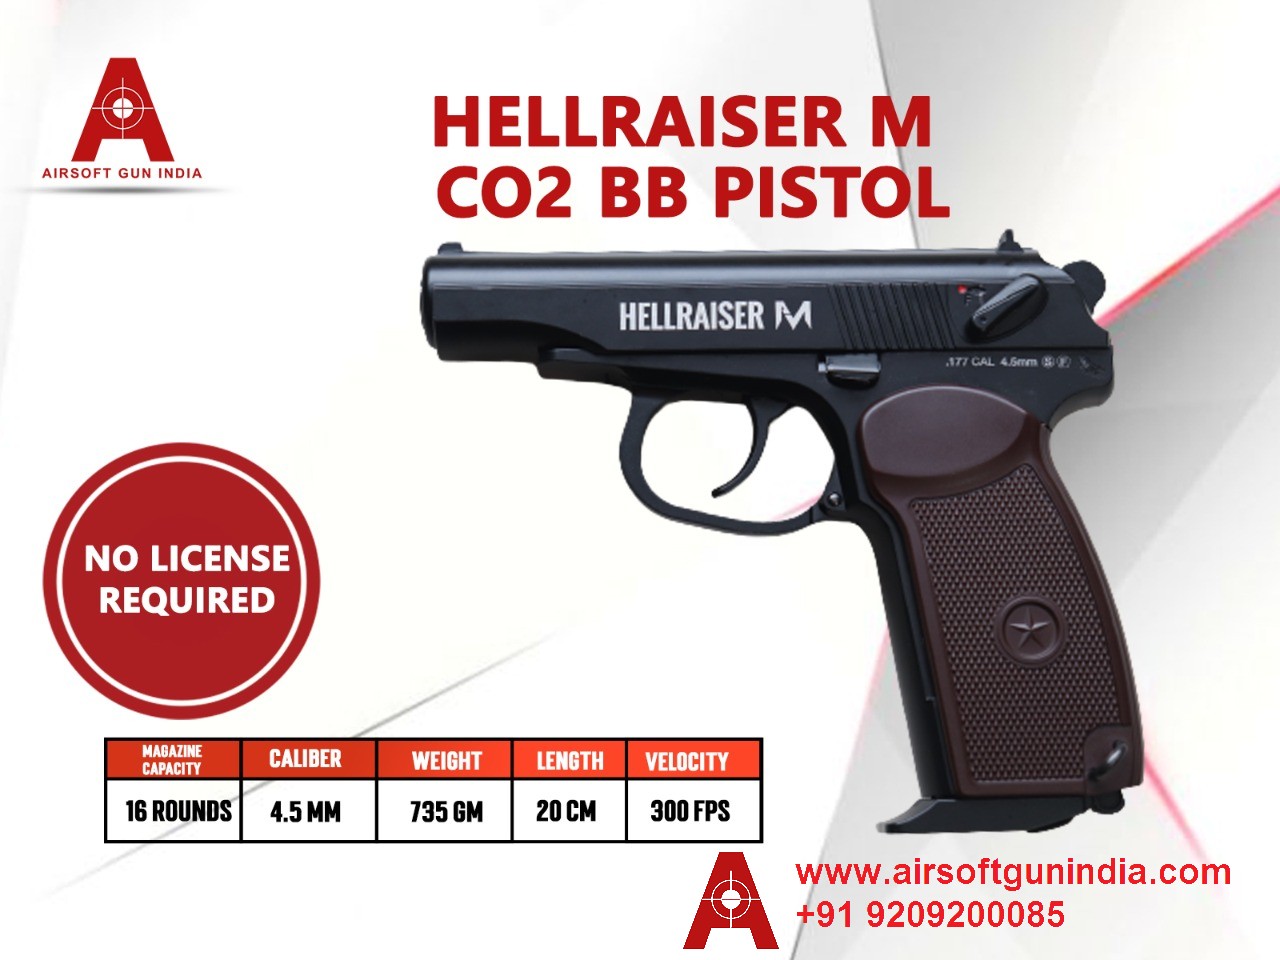 Hellraiser M CO2 BB .177Cal, 4.5mm Air Pistol By Airsoft Gun India